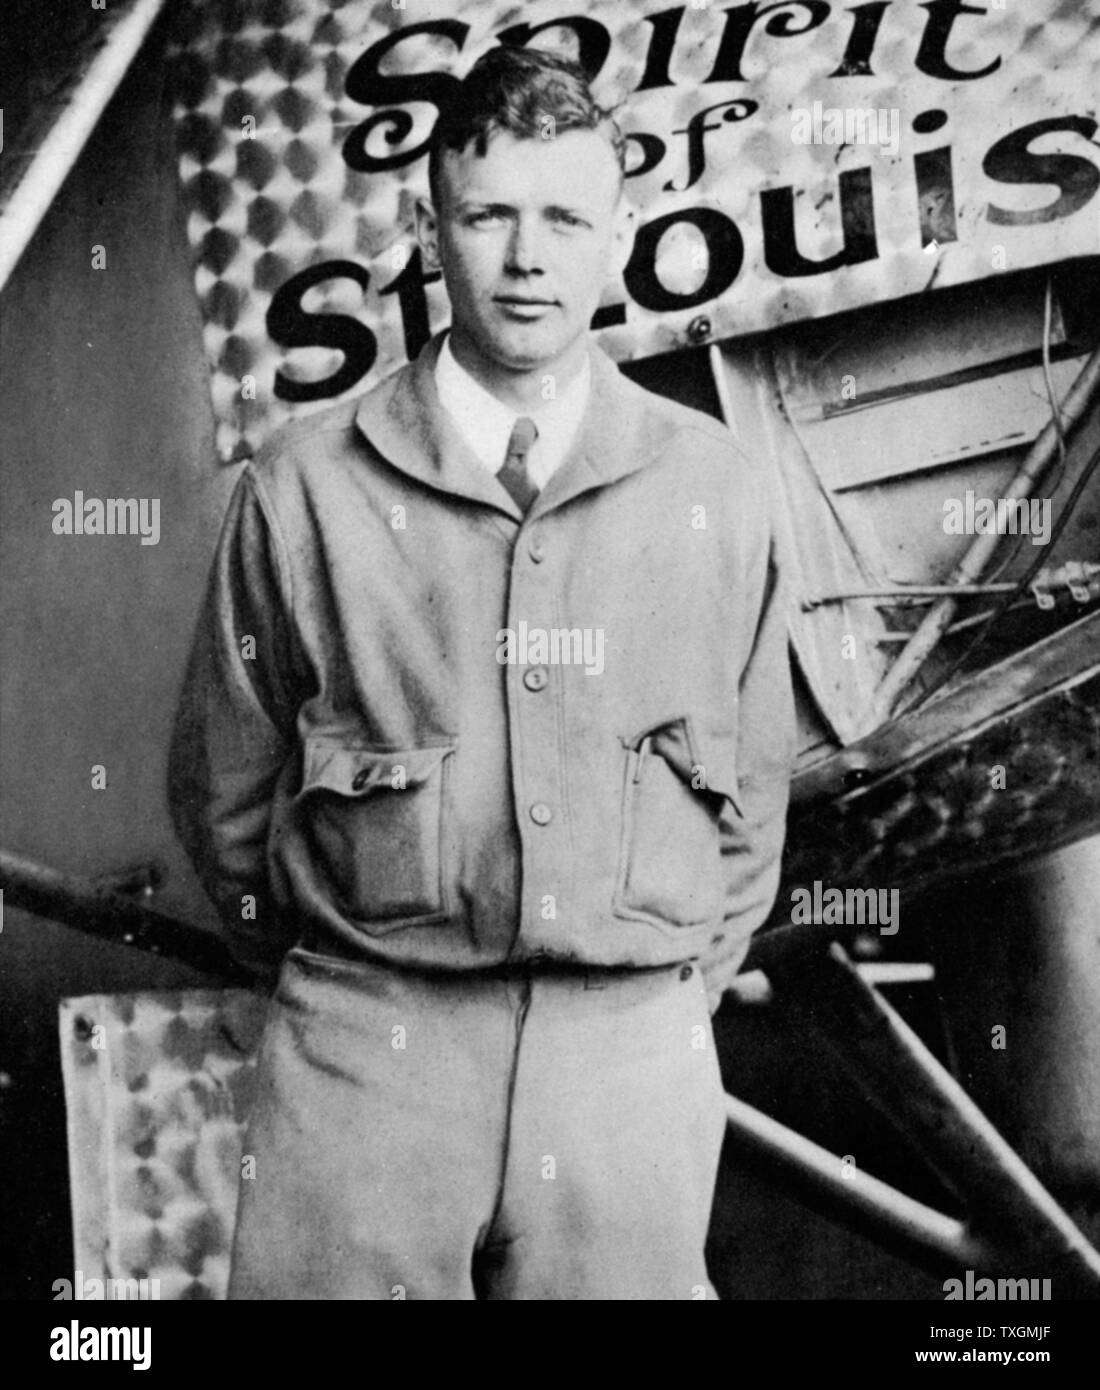 Charles Lindbergh (1902-1974) en su kit de vuelo de pie junto al "espíritu de San Luis", el avión en el que él hizo el primer non-stop travesía aérea del Atlántico: 20-21 de mayo de 1927. Aterrizó en el Aeródromo de Le Bourget, en París, después de un vuelo de 33,5 horas. Foto de stock